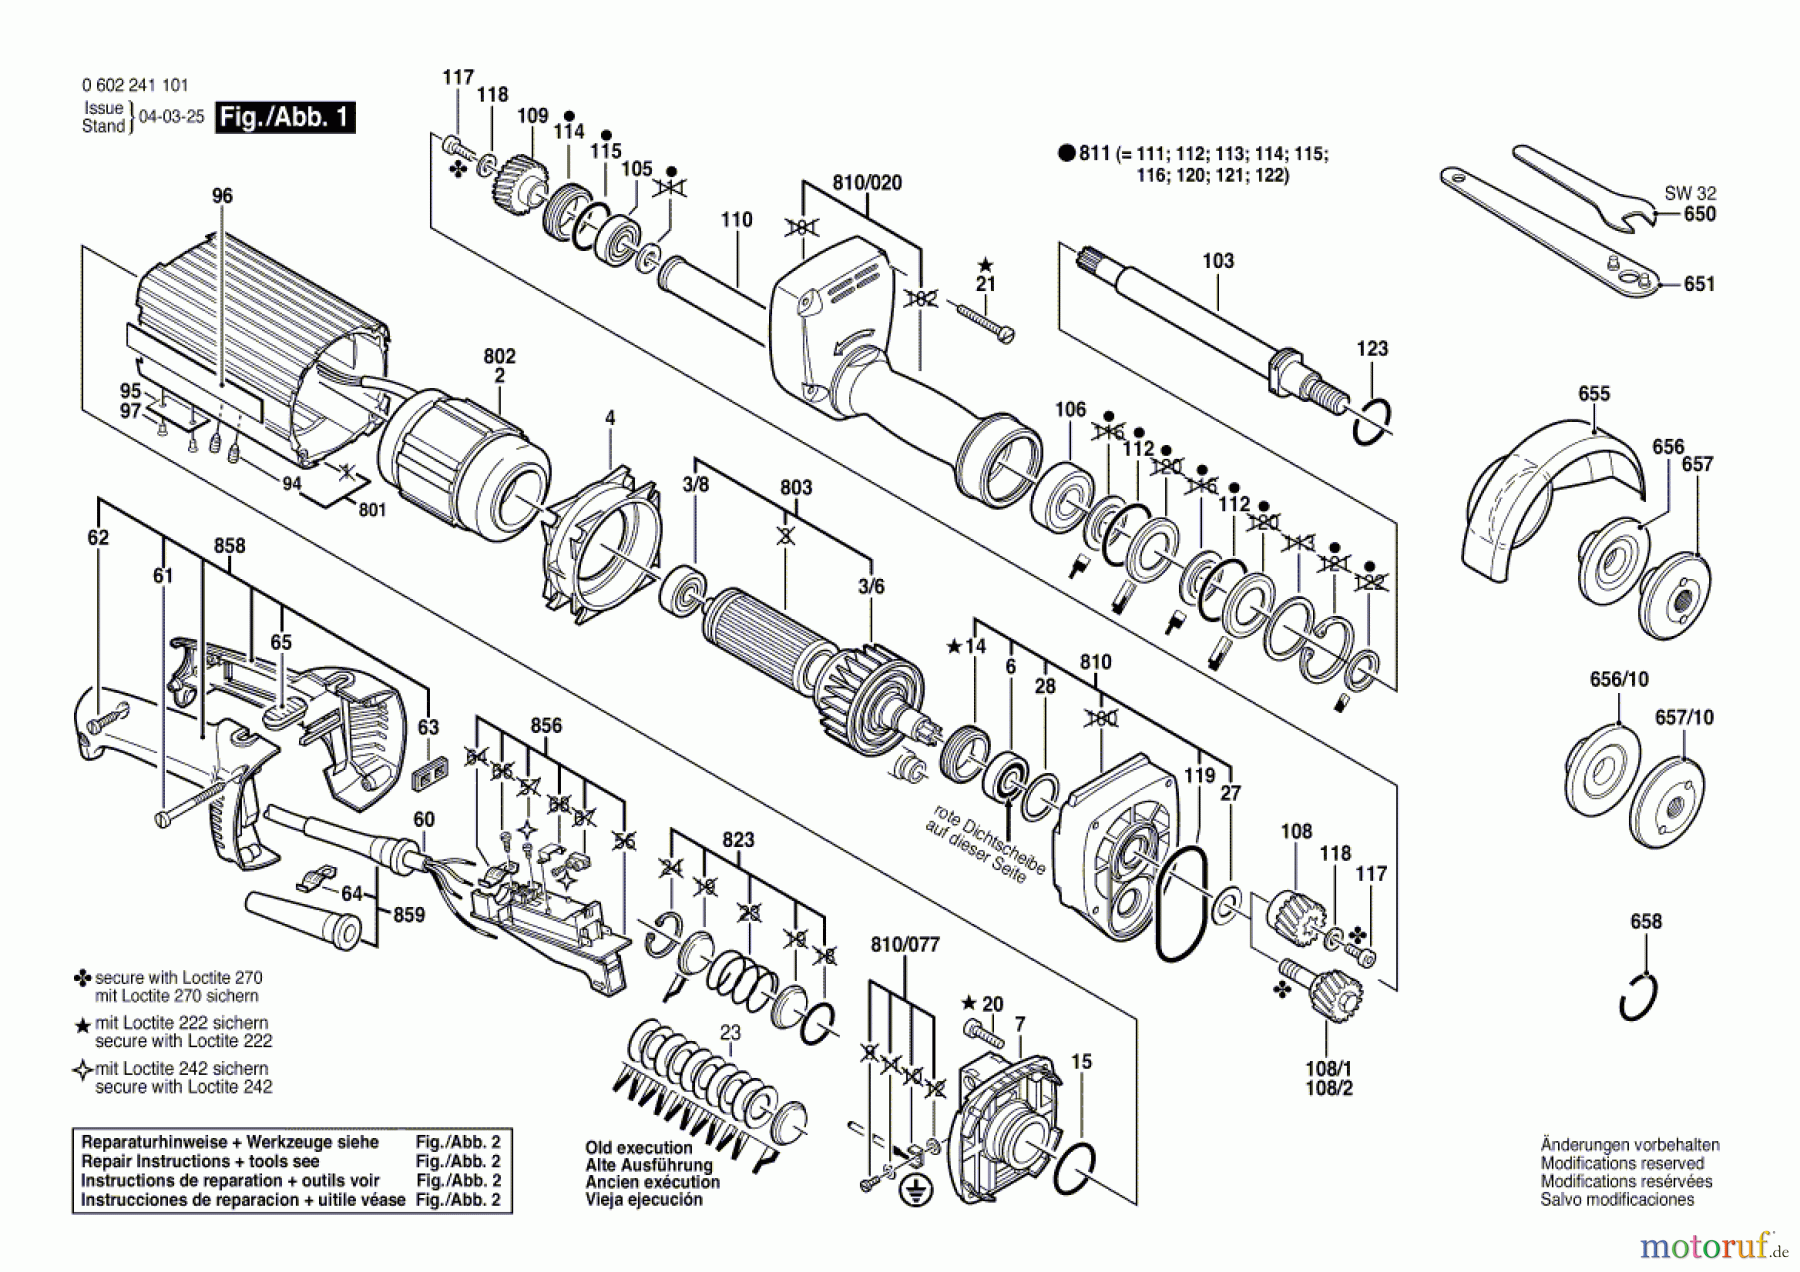  Bosch Werkzeug Hf-Geradschleifer GERADSCHLEIFER 2 241 Seite 1